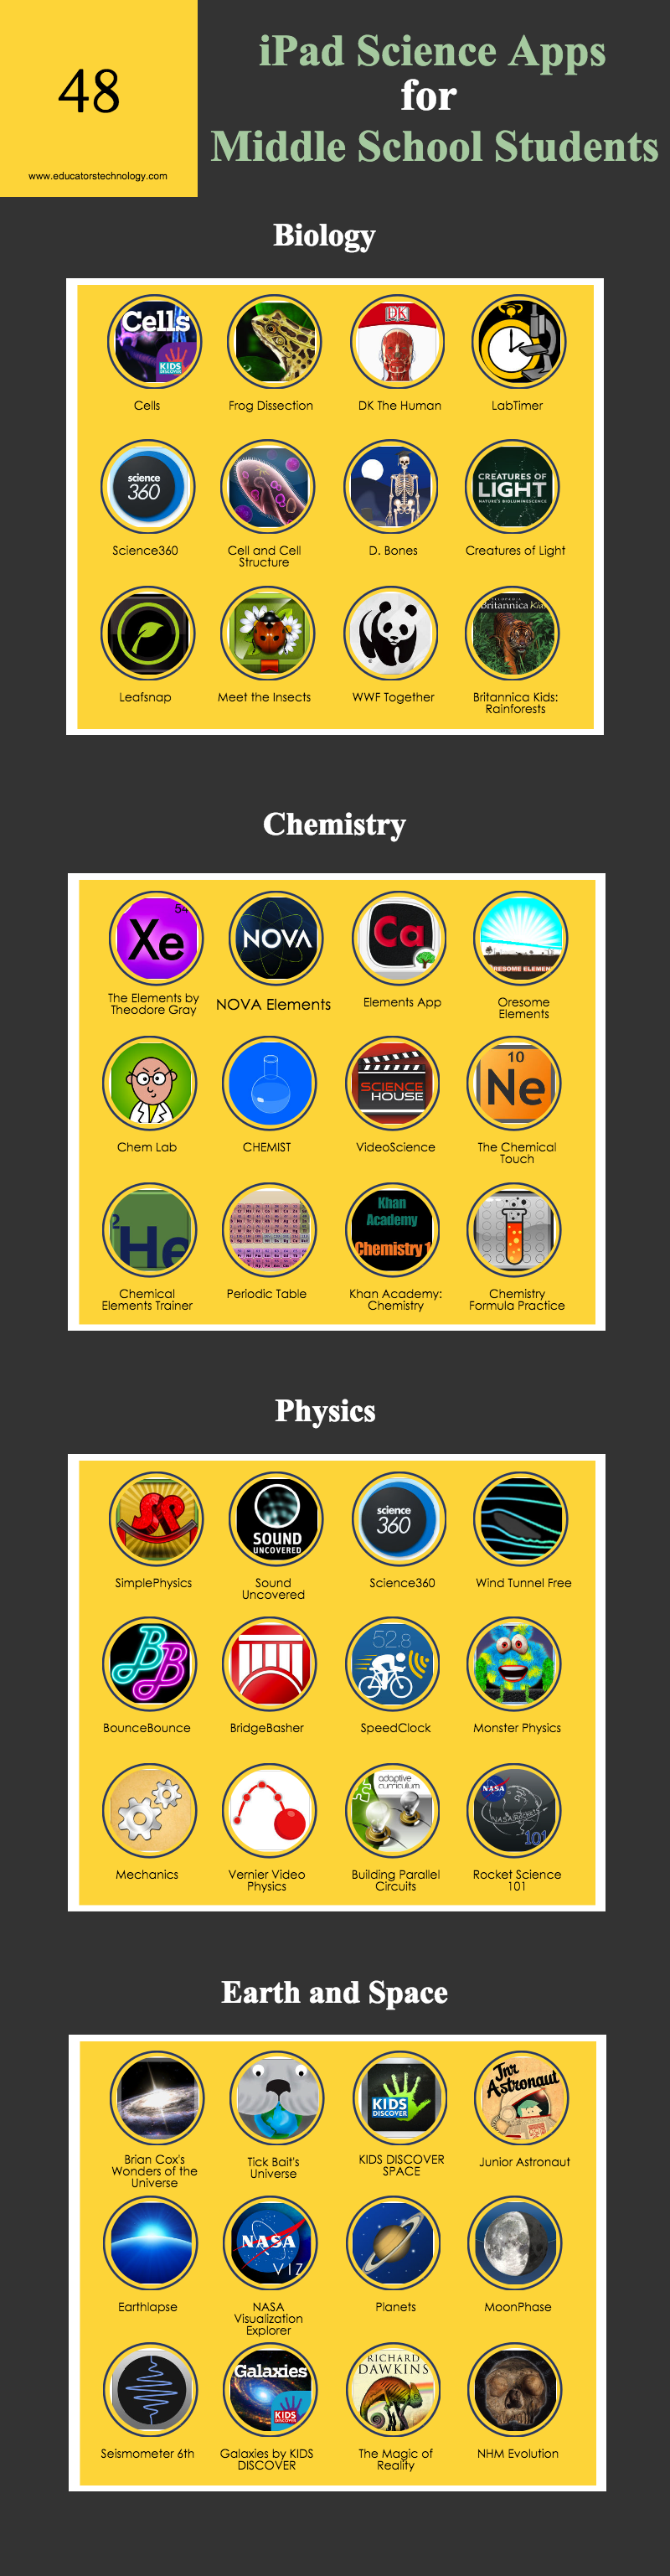 Mas de 40 excelentes aplicaciones de ciencia para iPad para